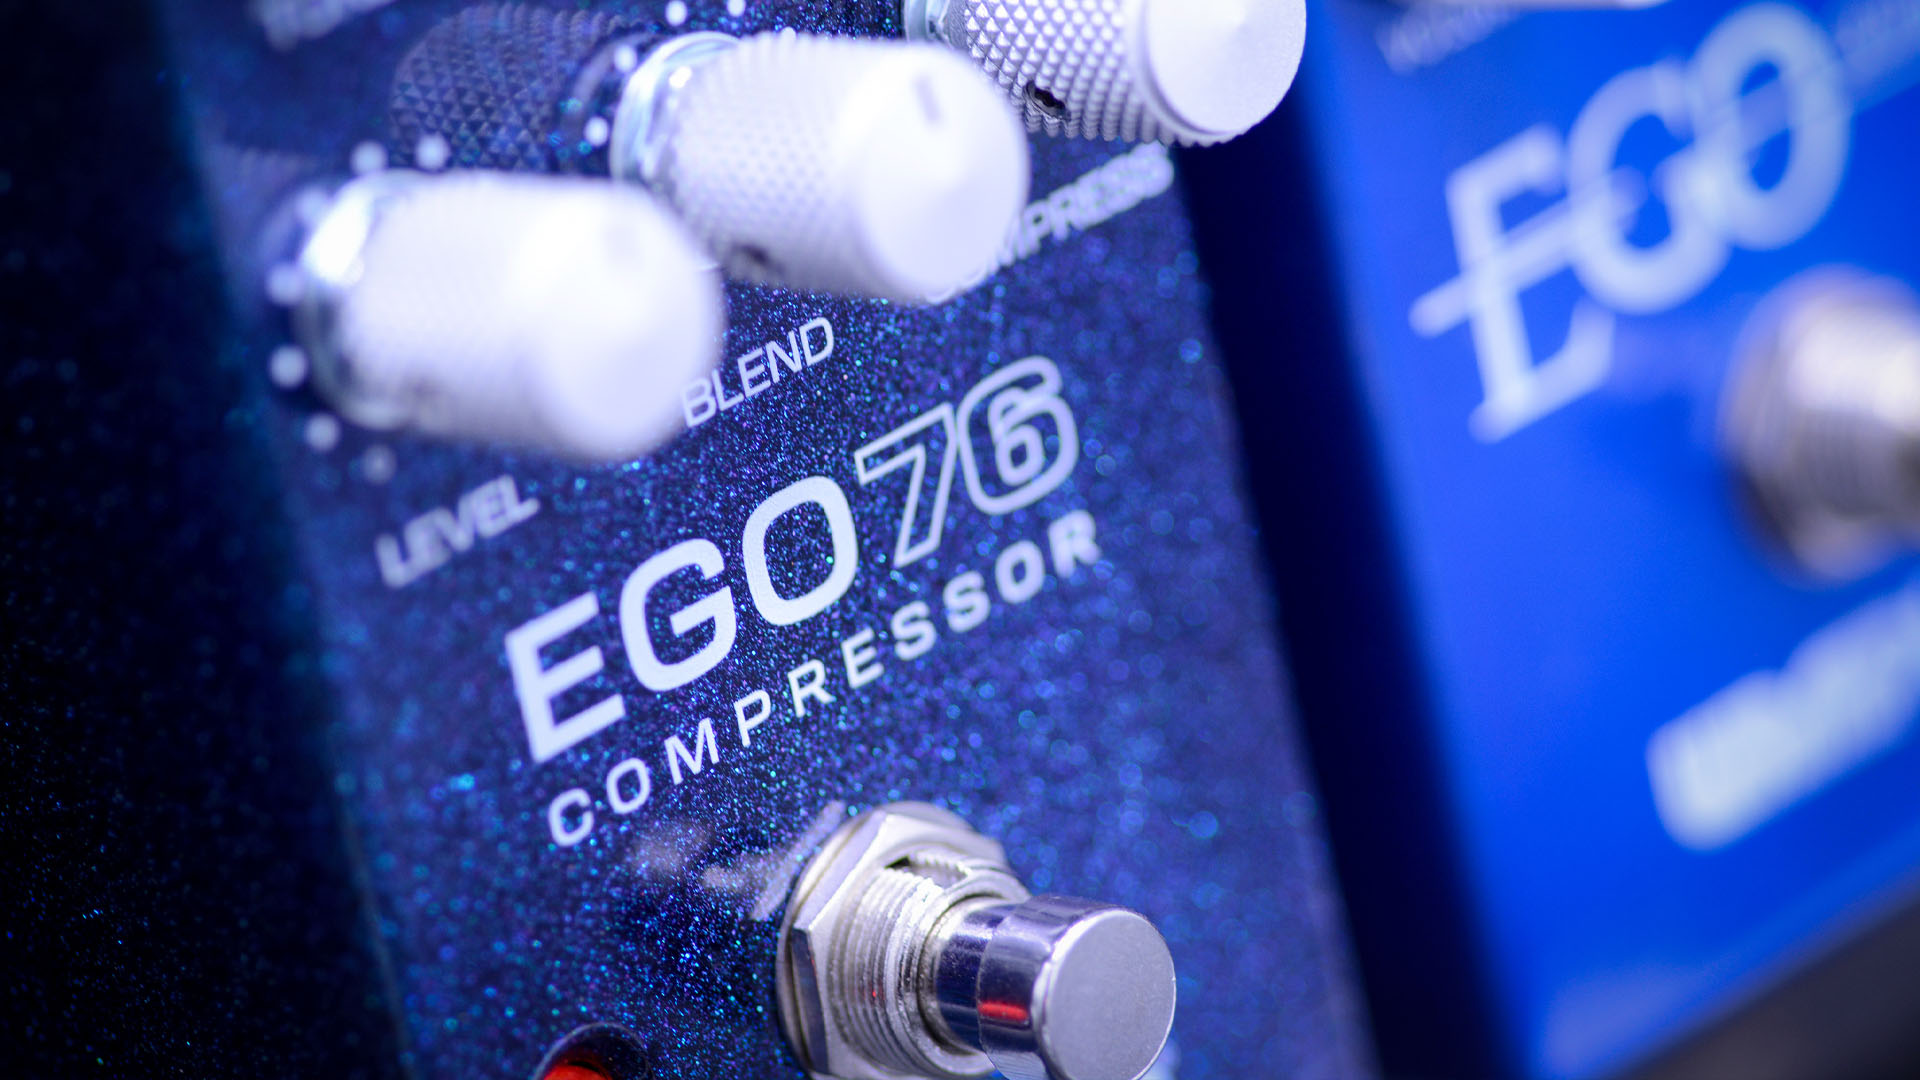 Ego 76 Compressor Pedal